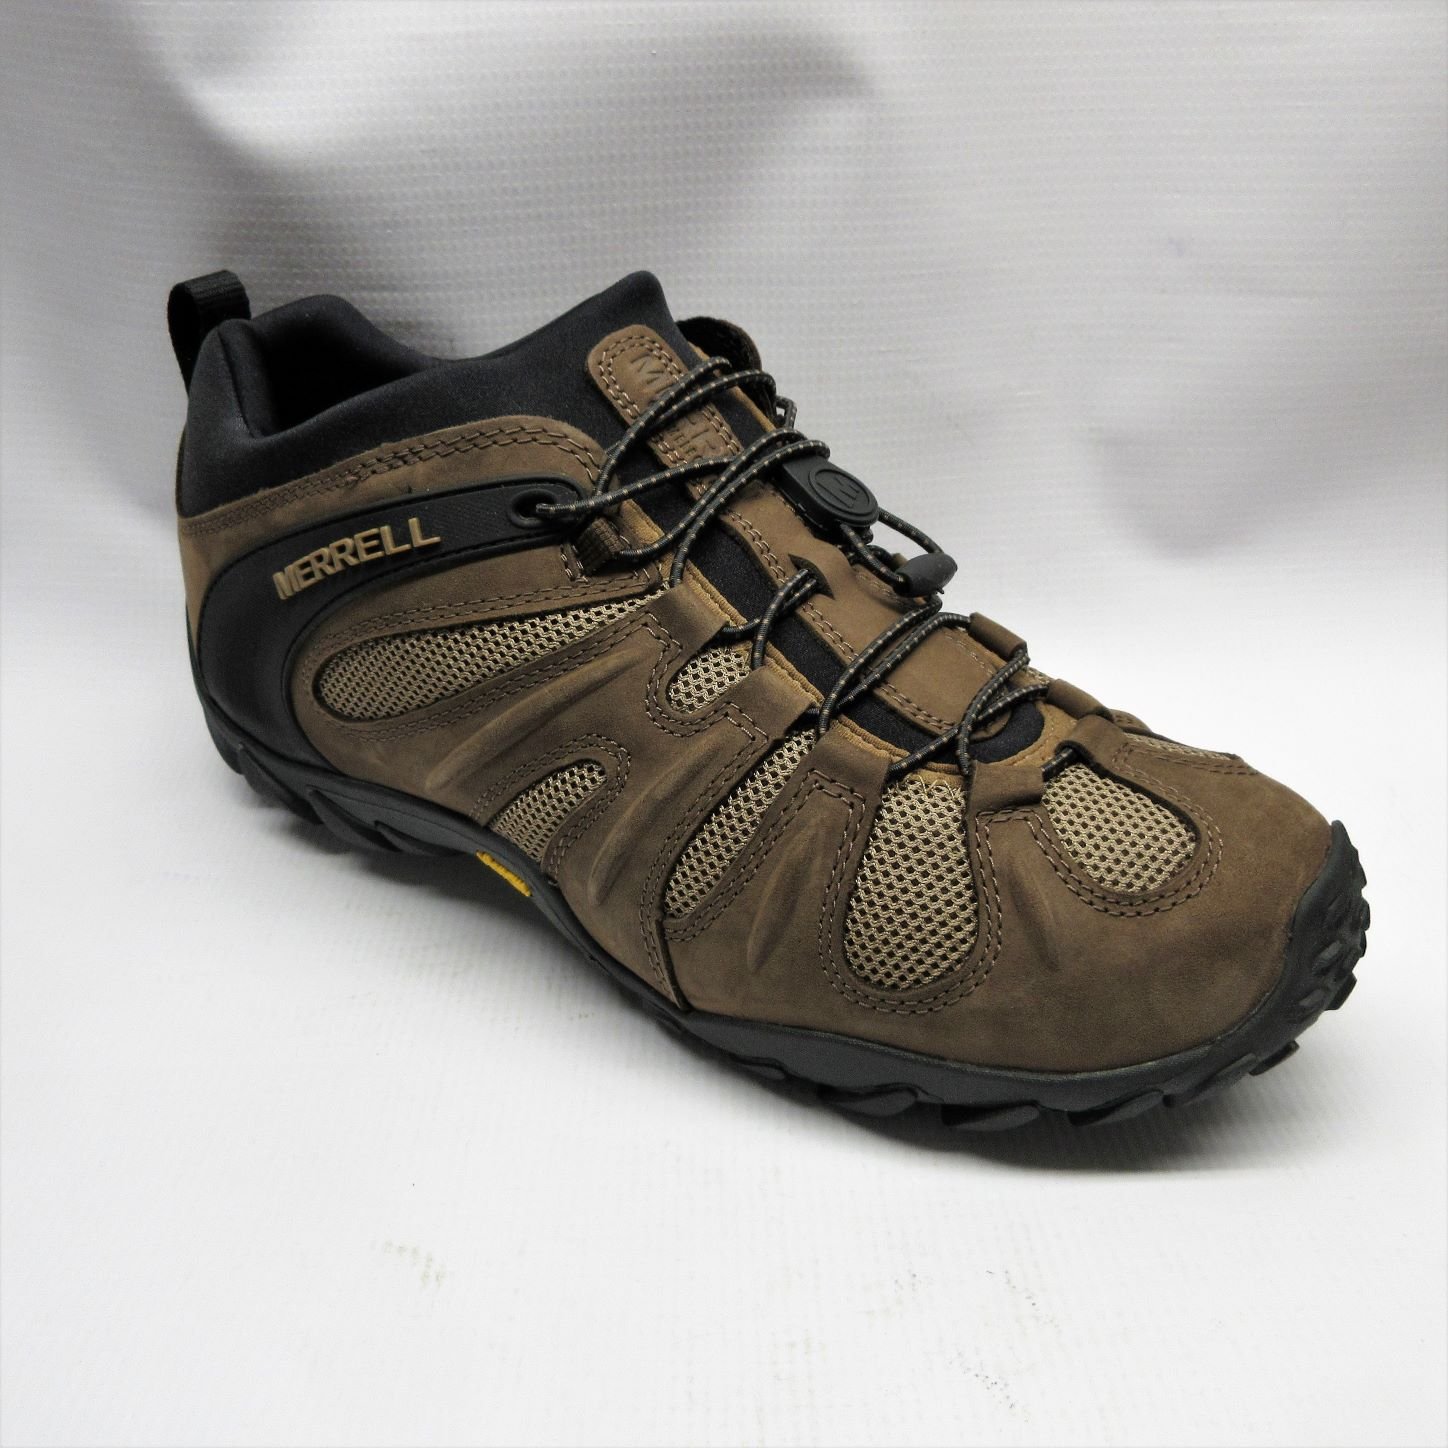 Do Merrell Shoes Stretch Hotsell | bellvalefarms.com